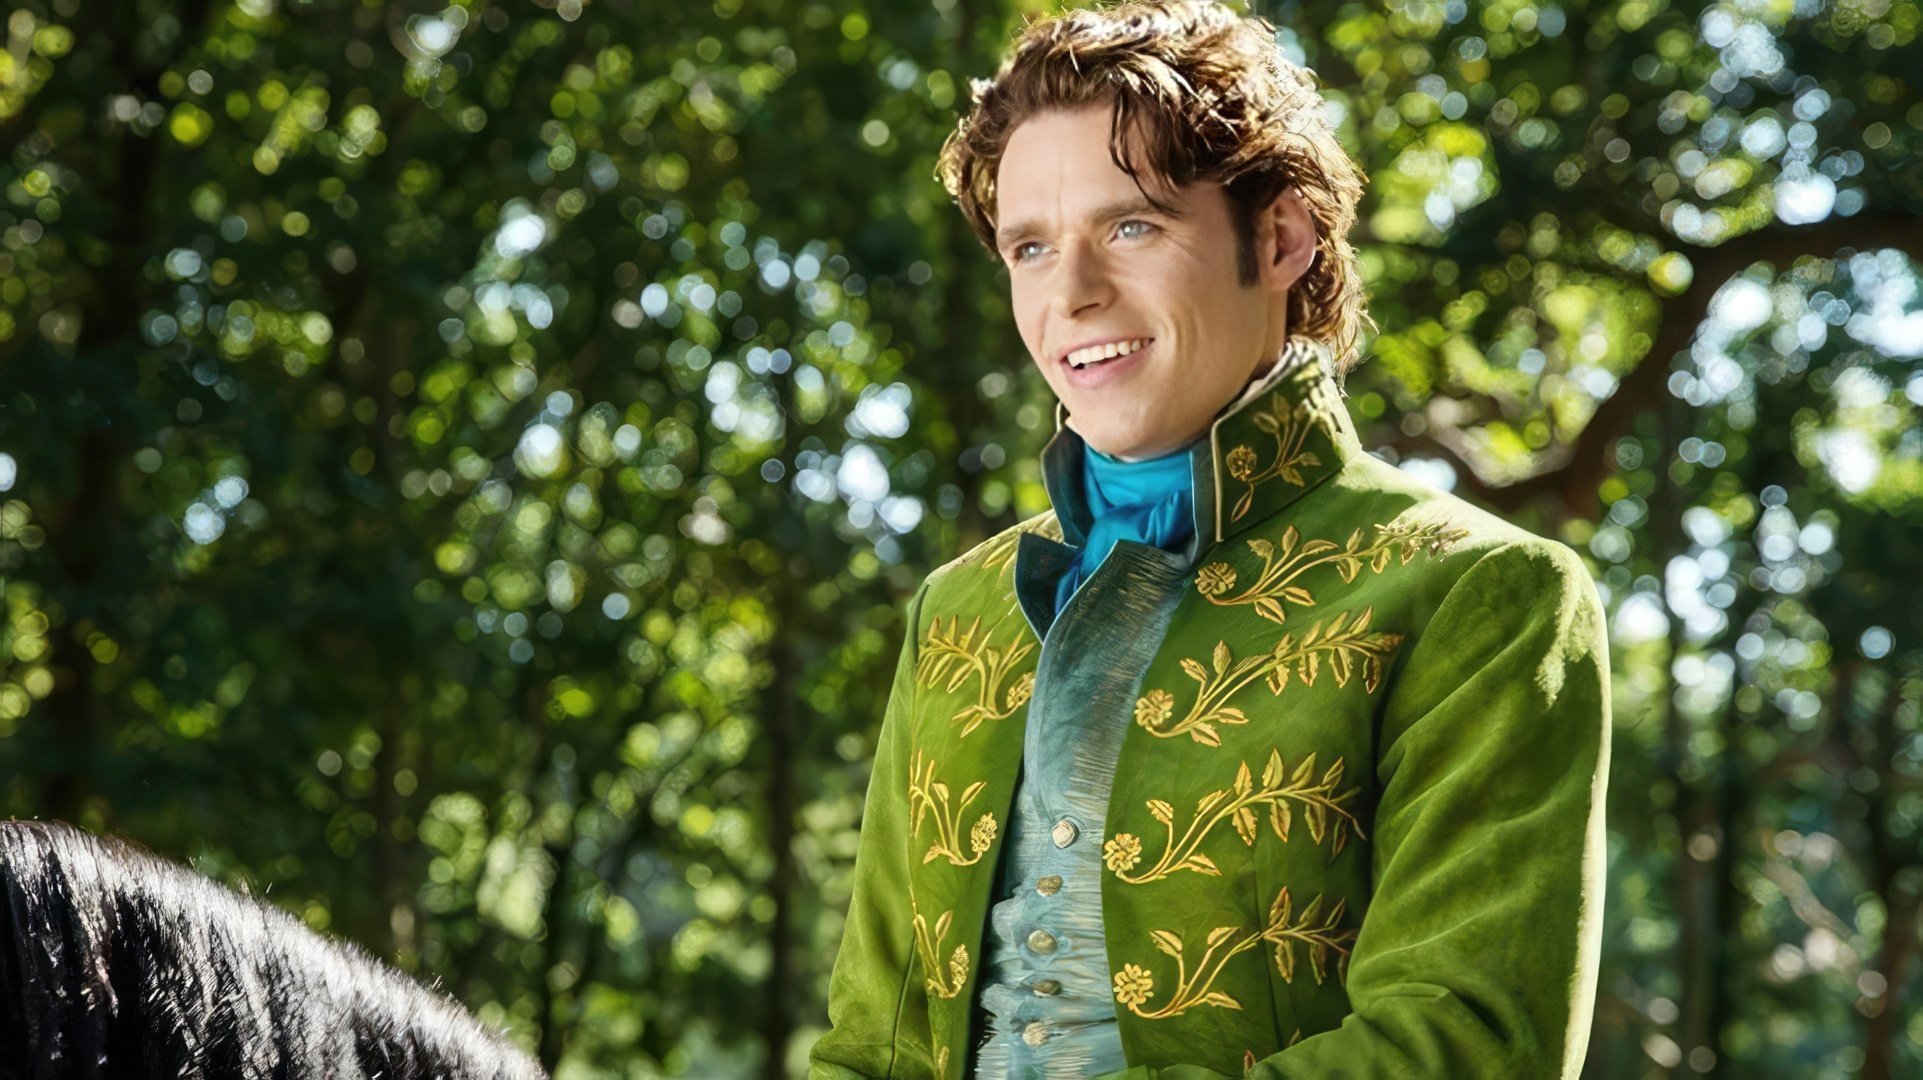 Richard as Prince Charming